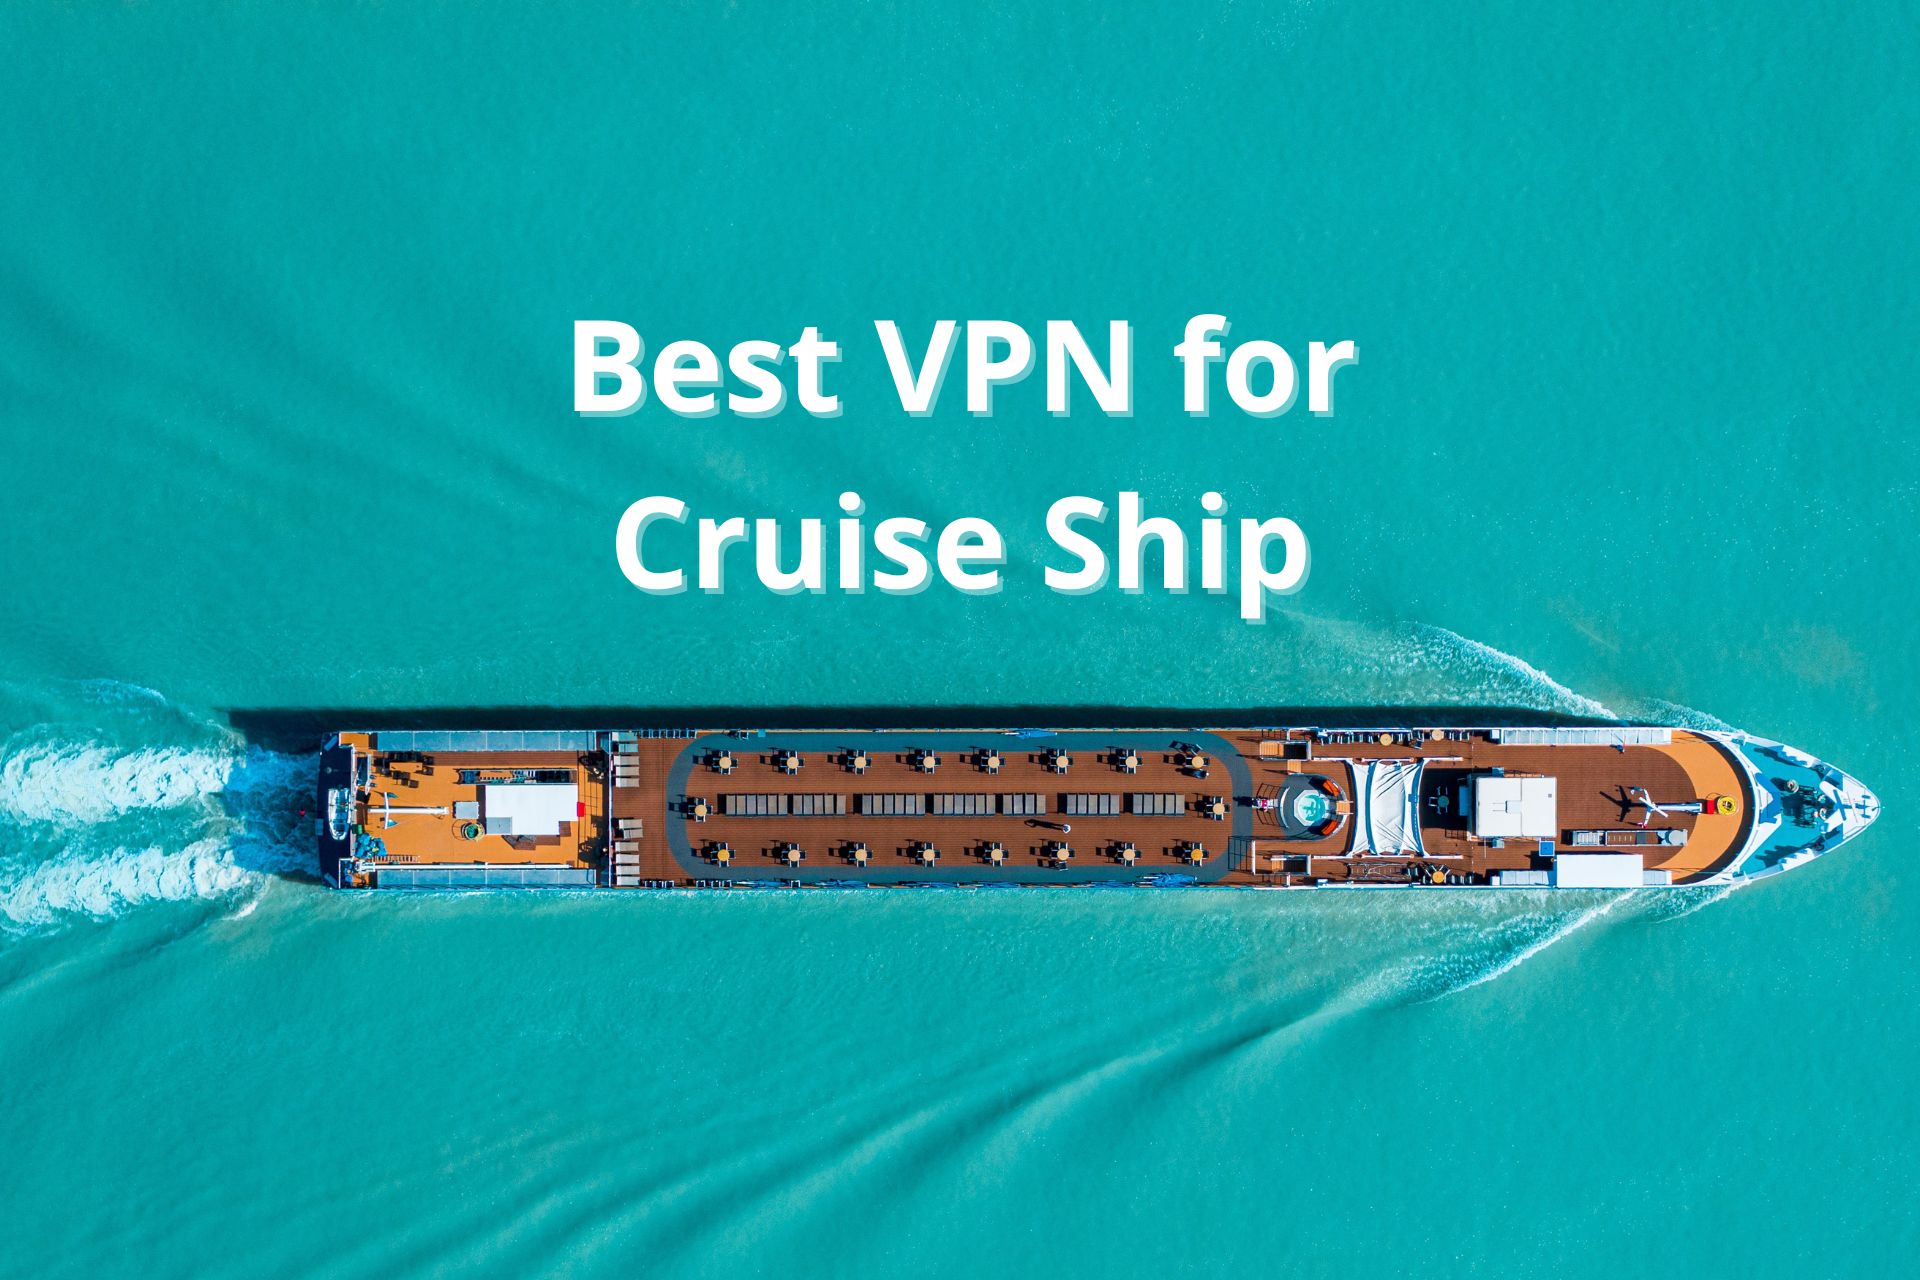 Best VPN for Cruise Ship